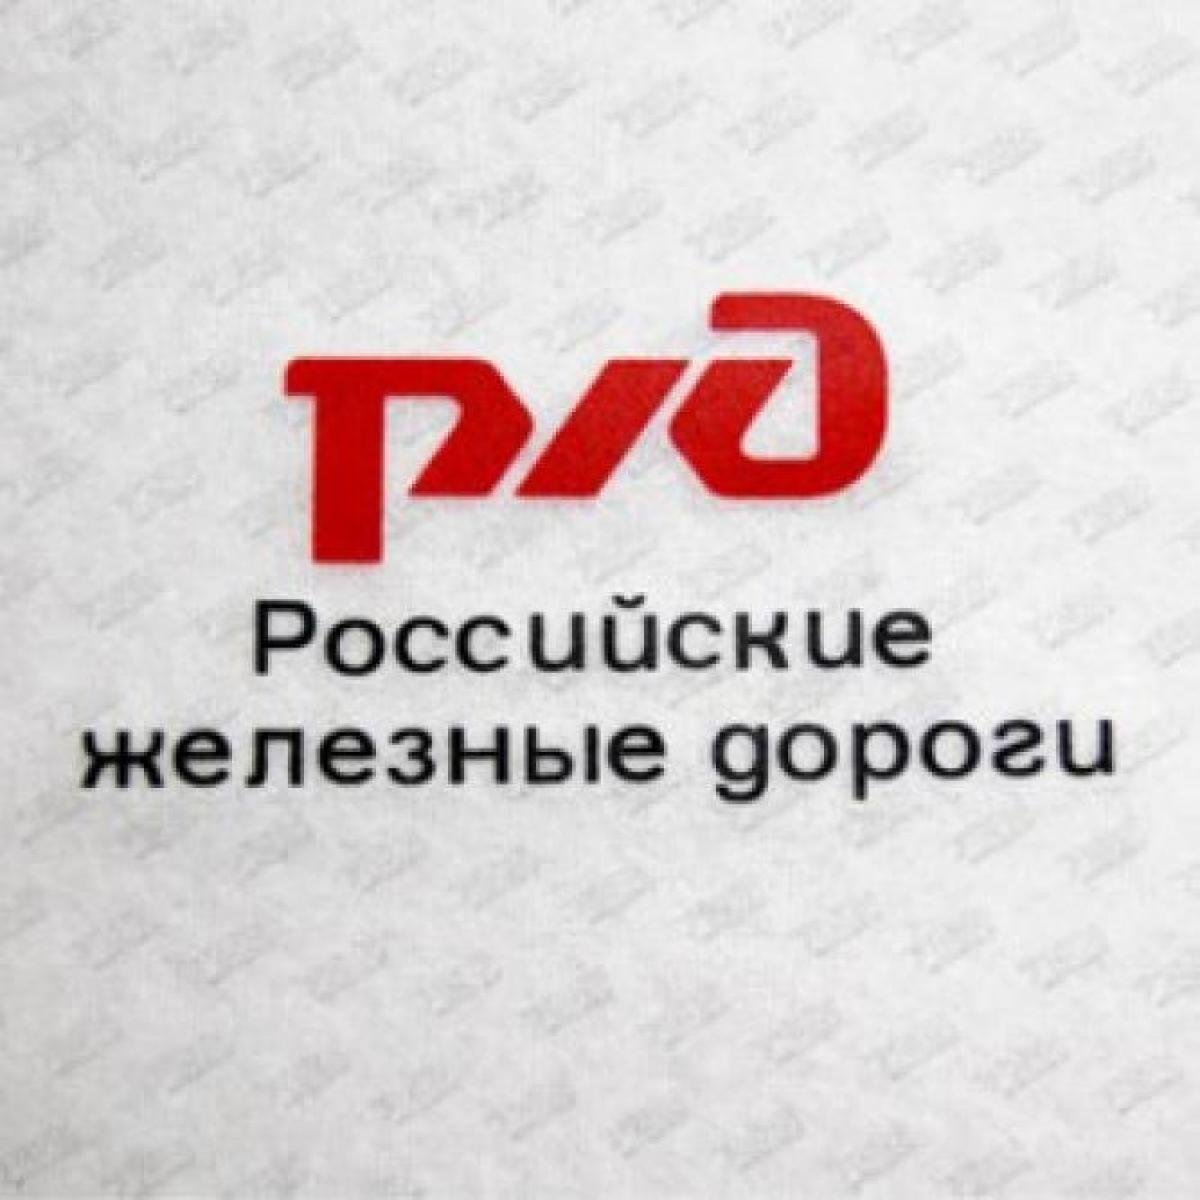 Логотип железной дороги